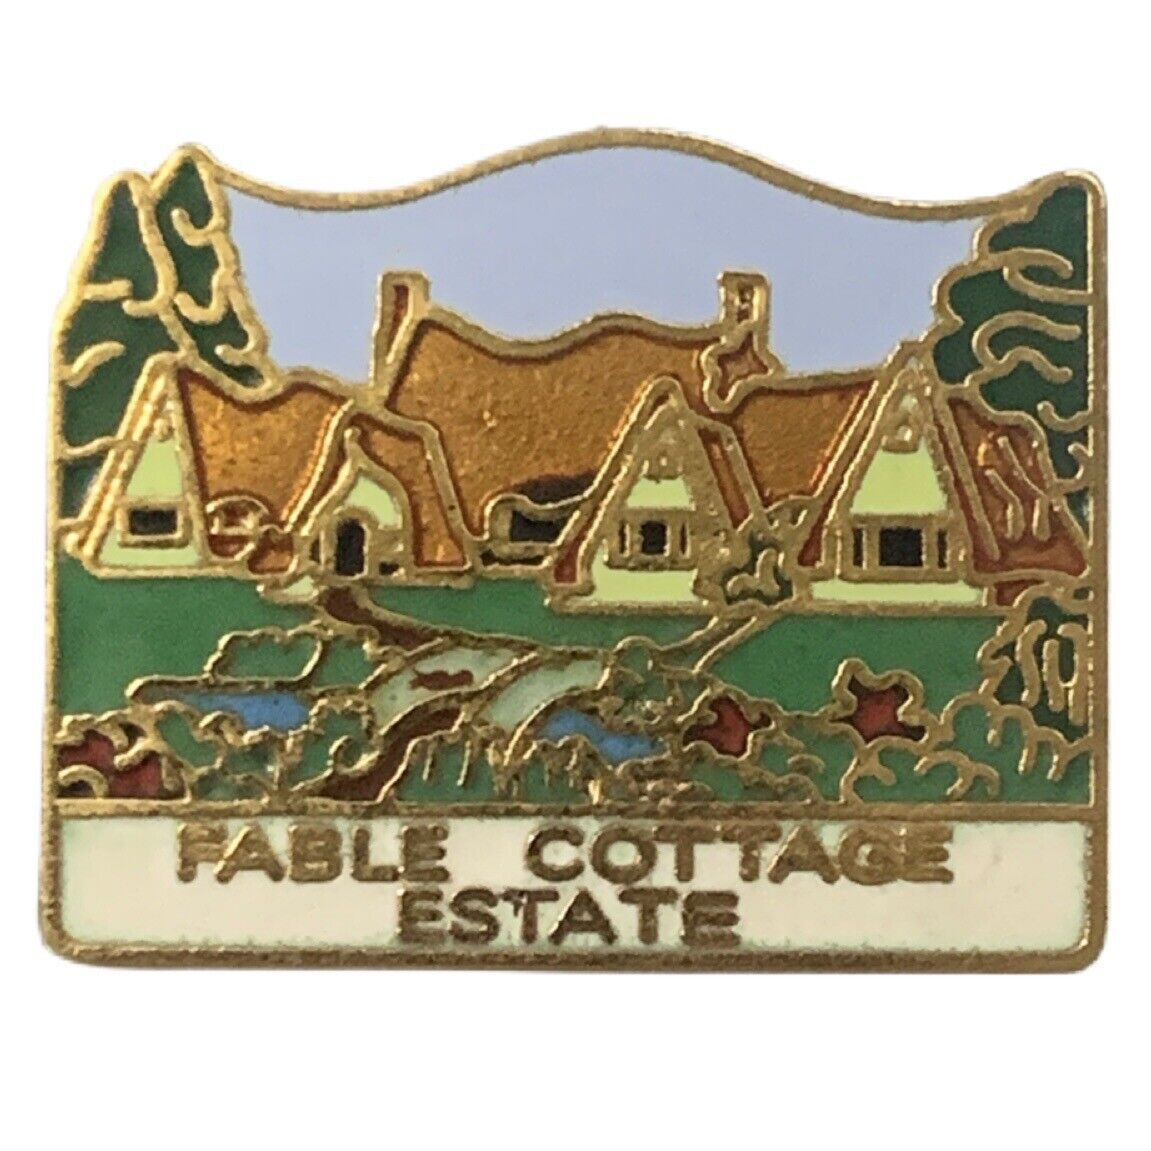 Fable Cottage Estate Victoria British Columbia Canada Scenic Travel Souvenir Pin